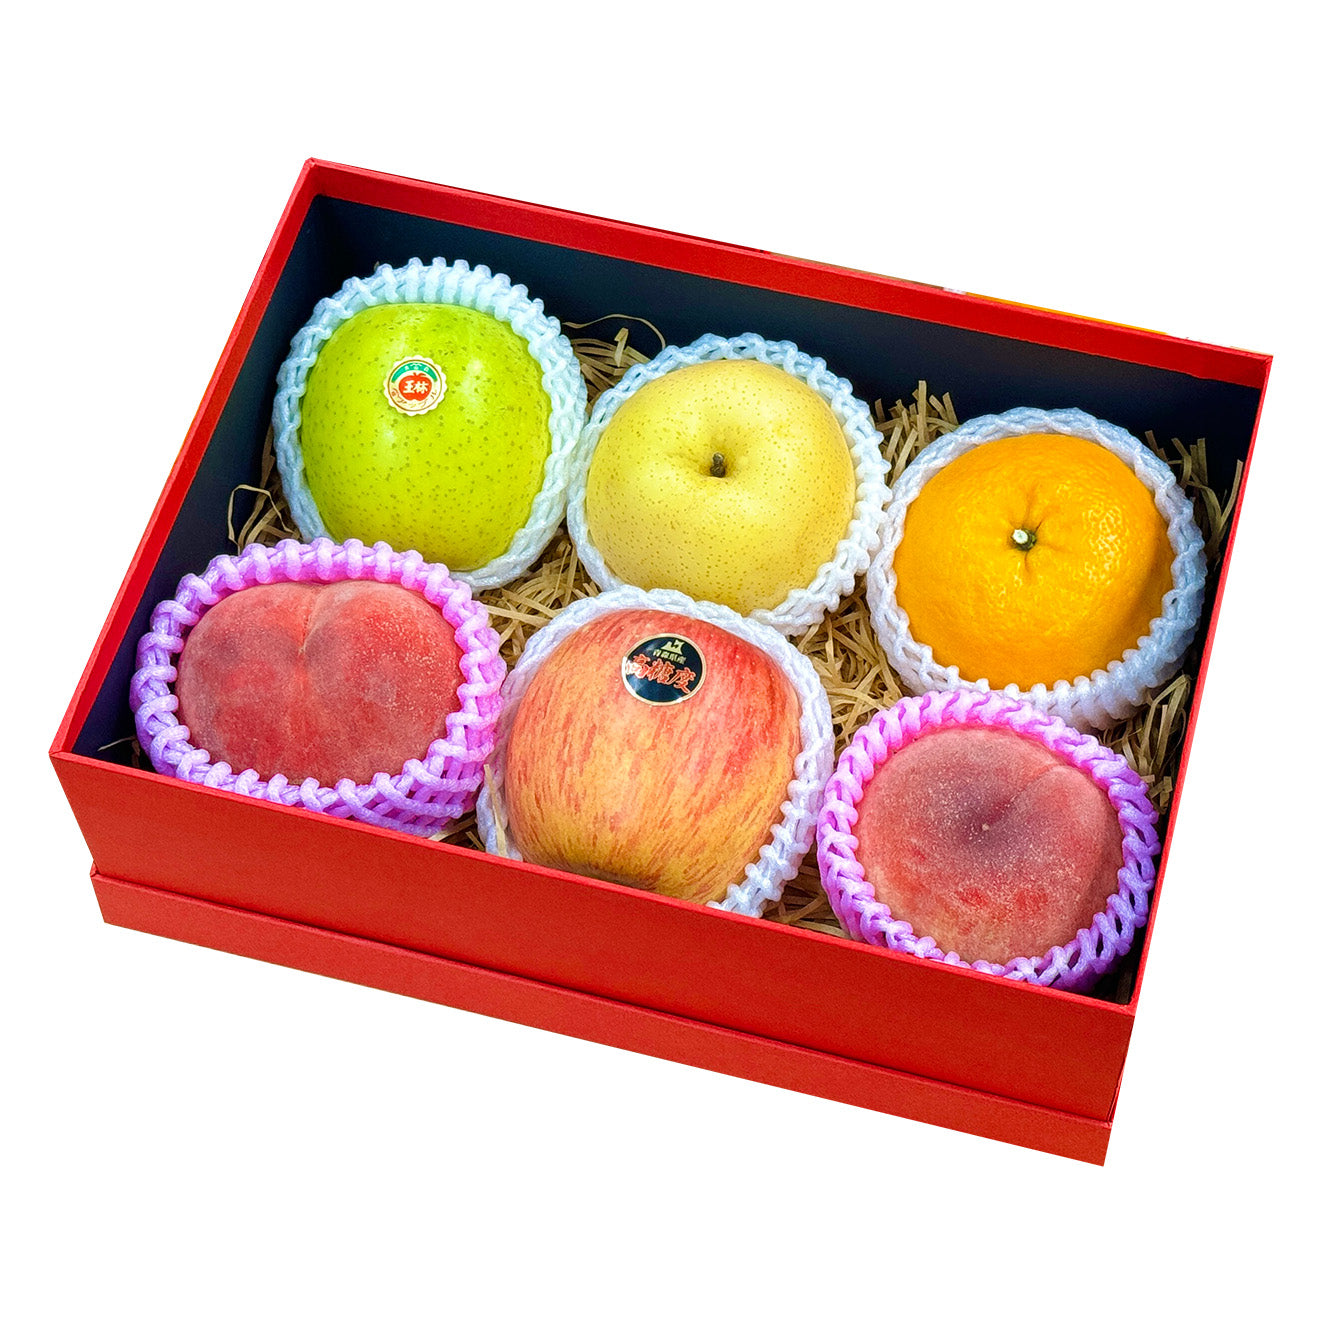 MAF2414 中秋水果盒 